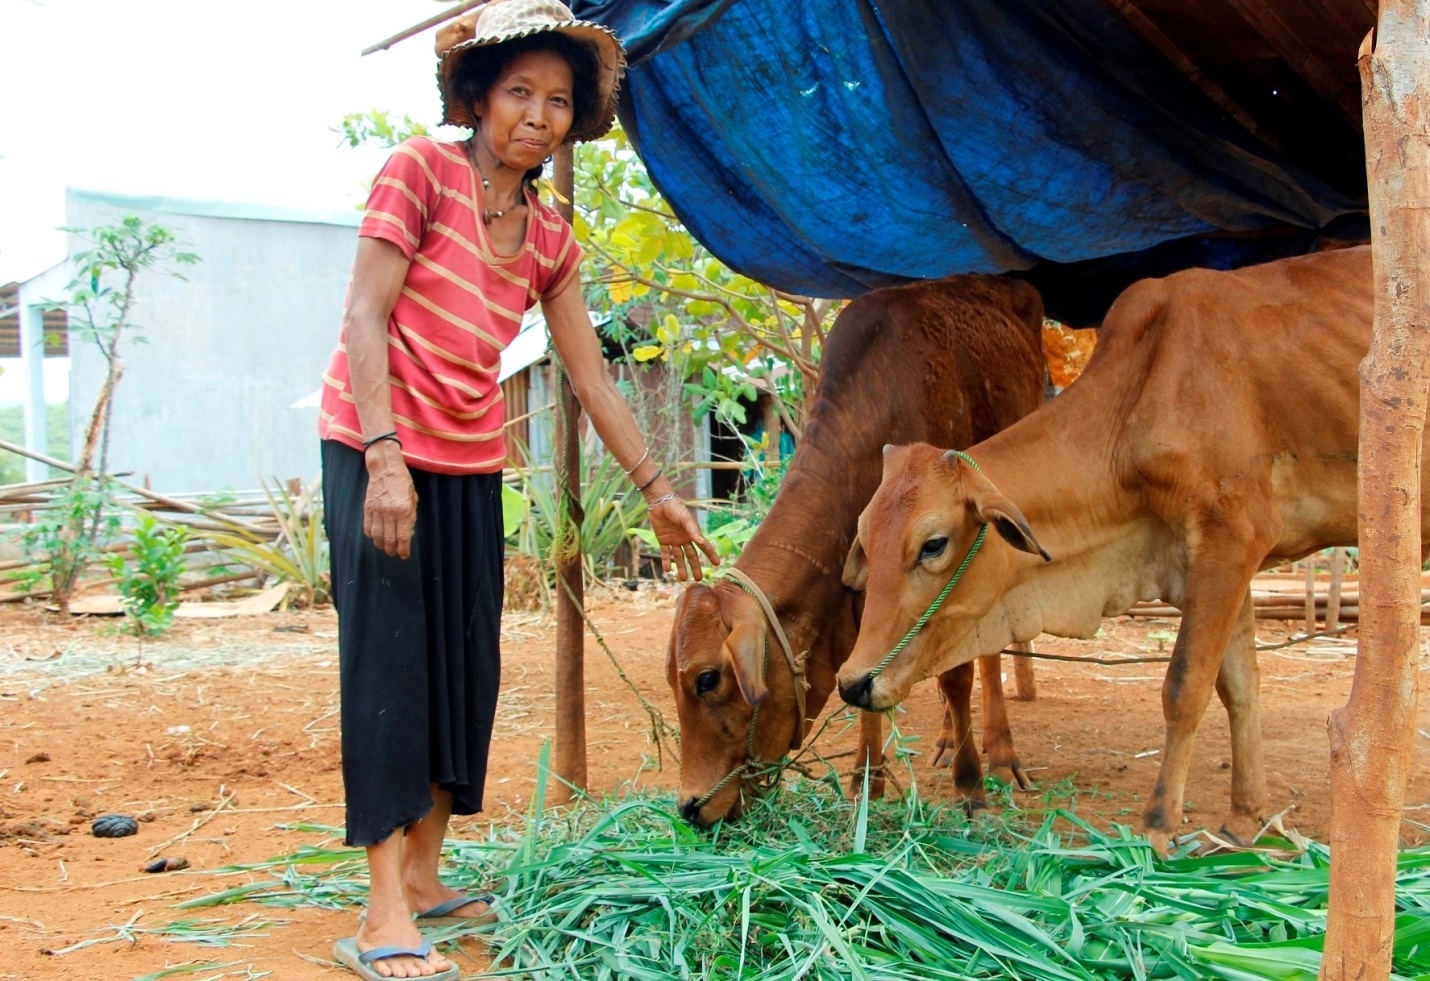 Người dân đồng bào DTTS ở huyện Bù Gia Mập (tỉnh Bình Phước) được hỗ trợ bò để phát triển kinh tế, thoát nghèo bền vững.